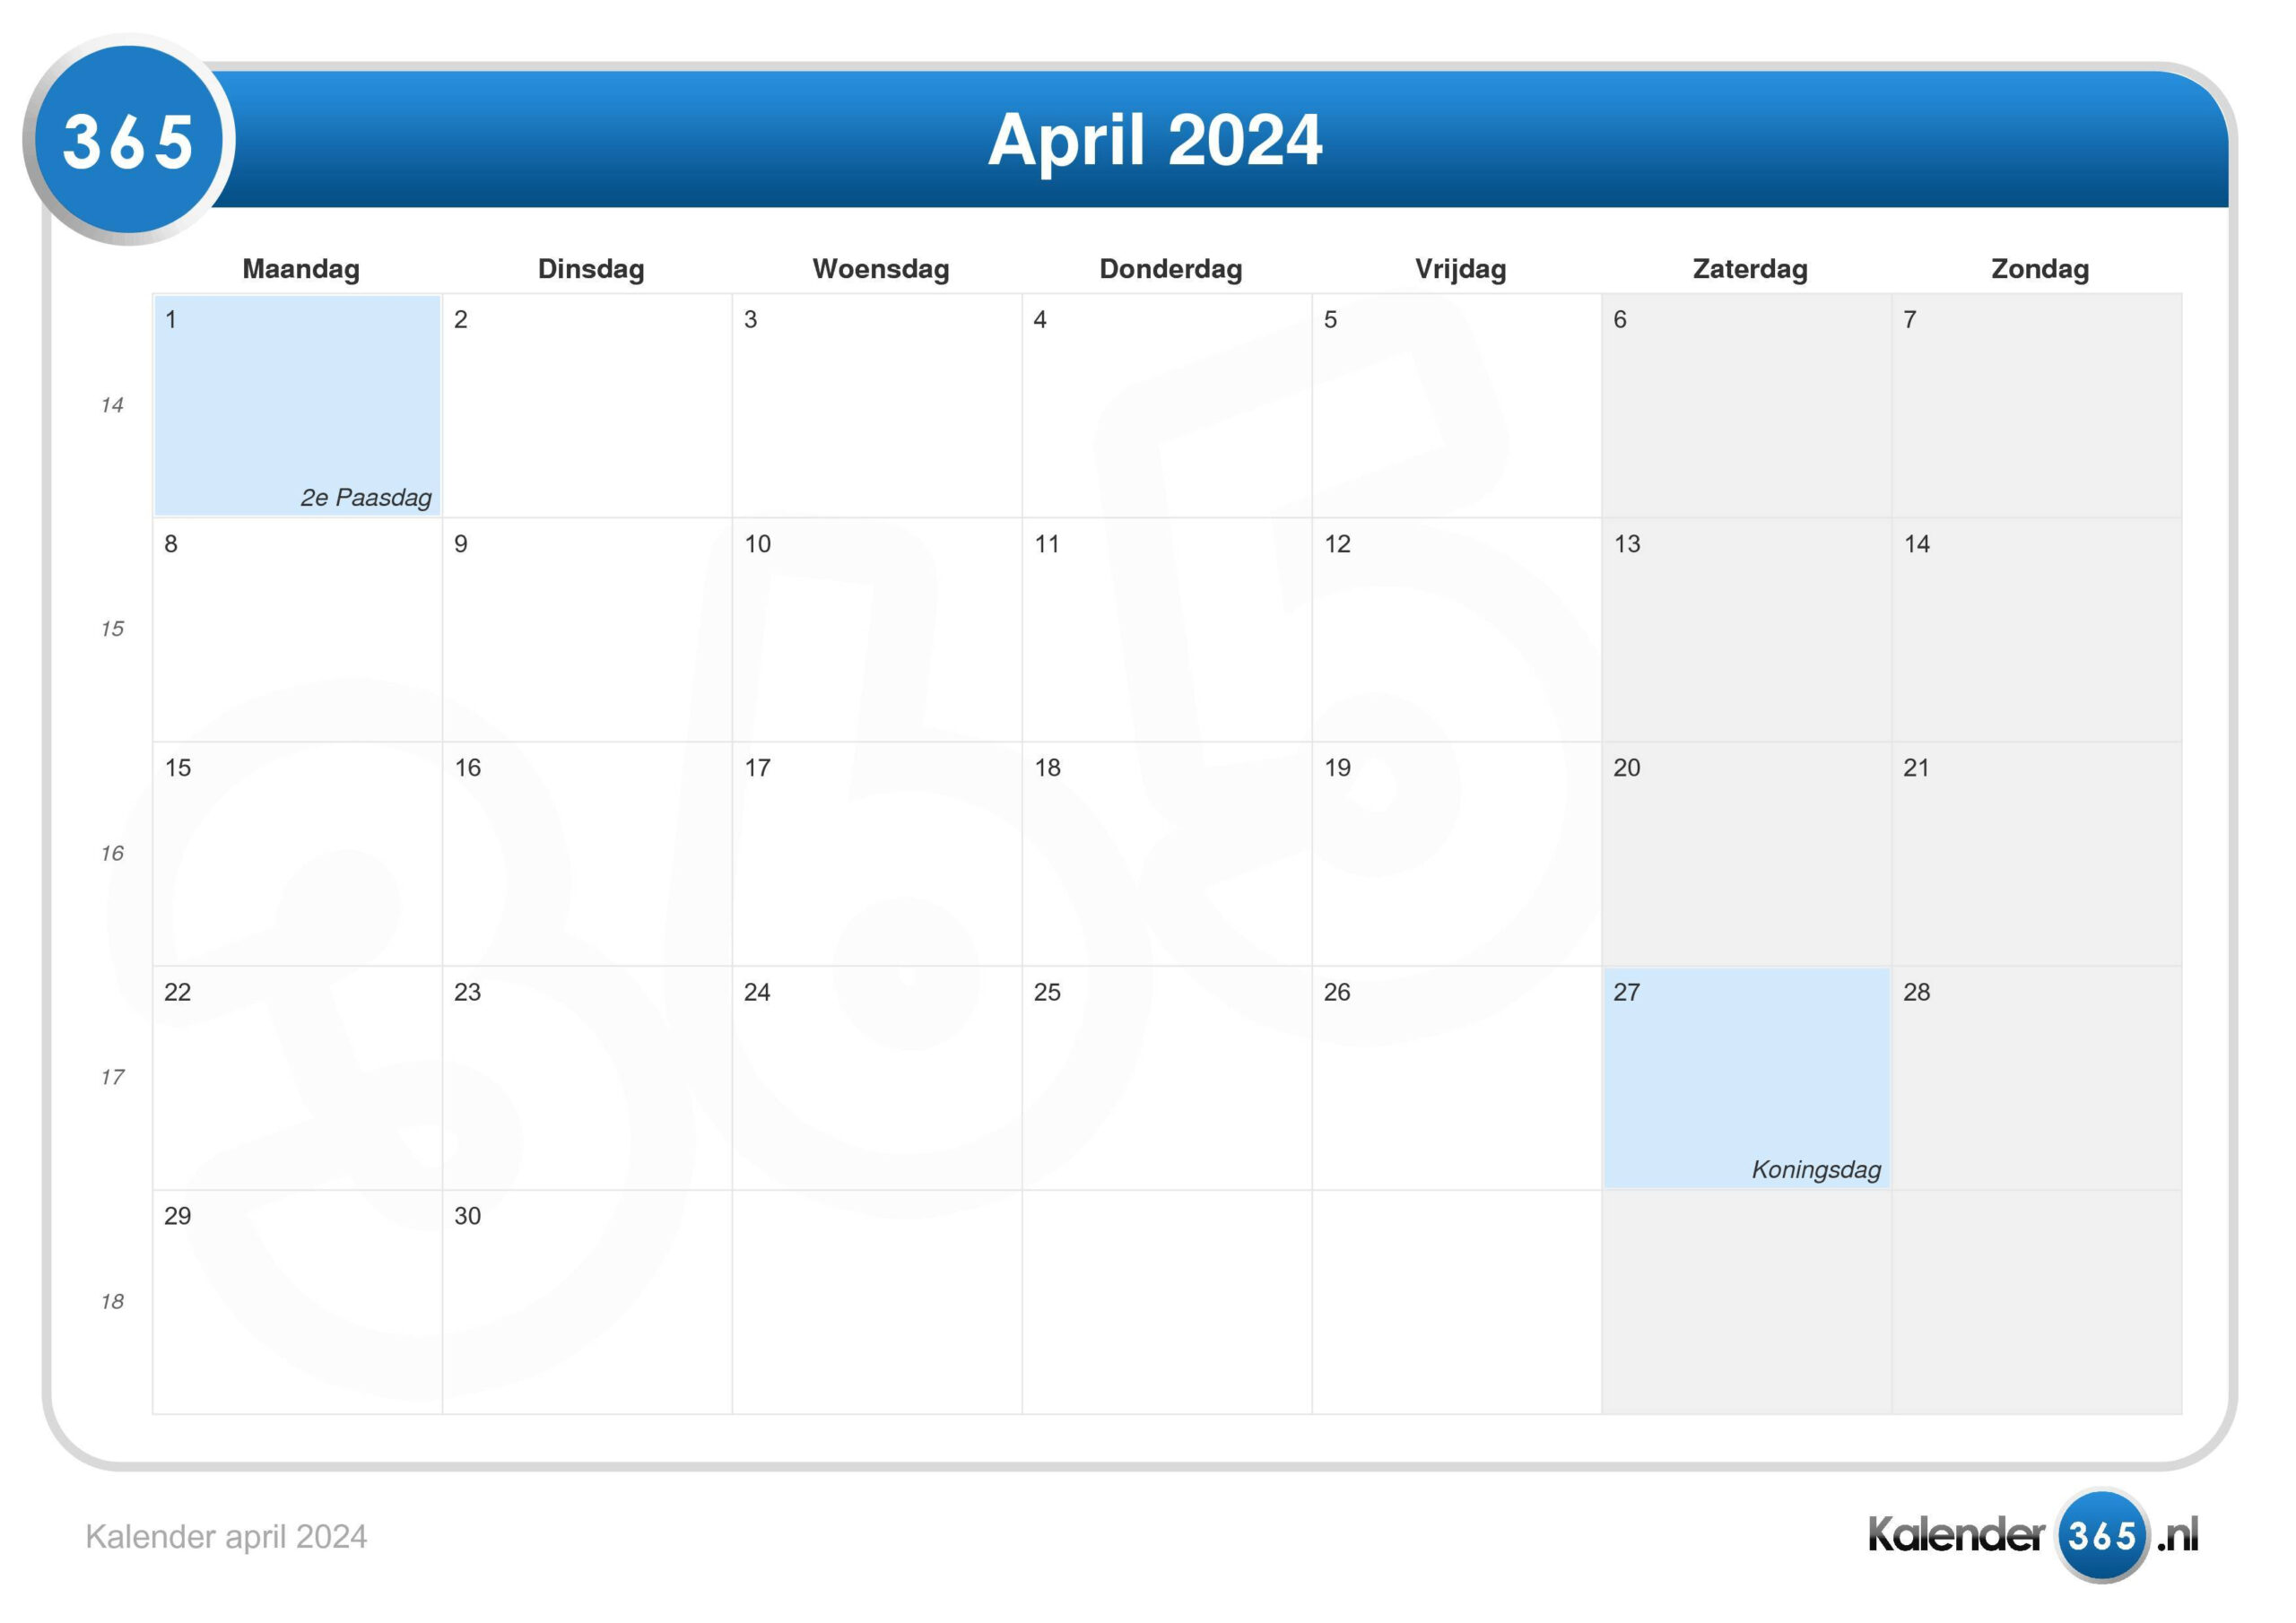 Kalender April 2024 intended for Calender 2024 April